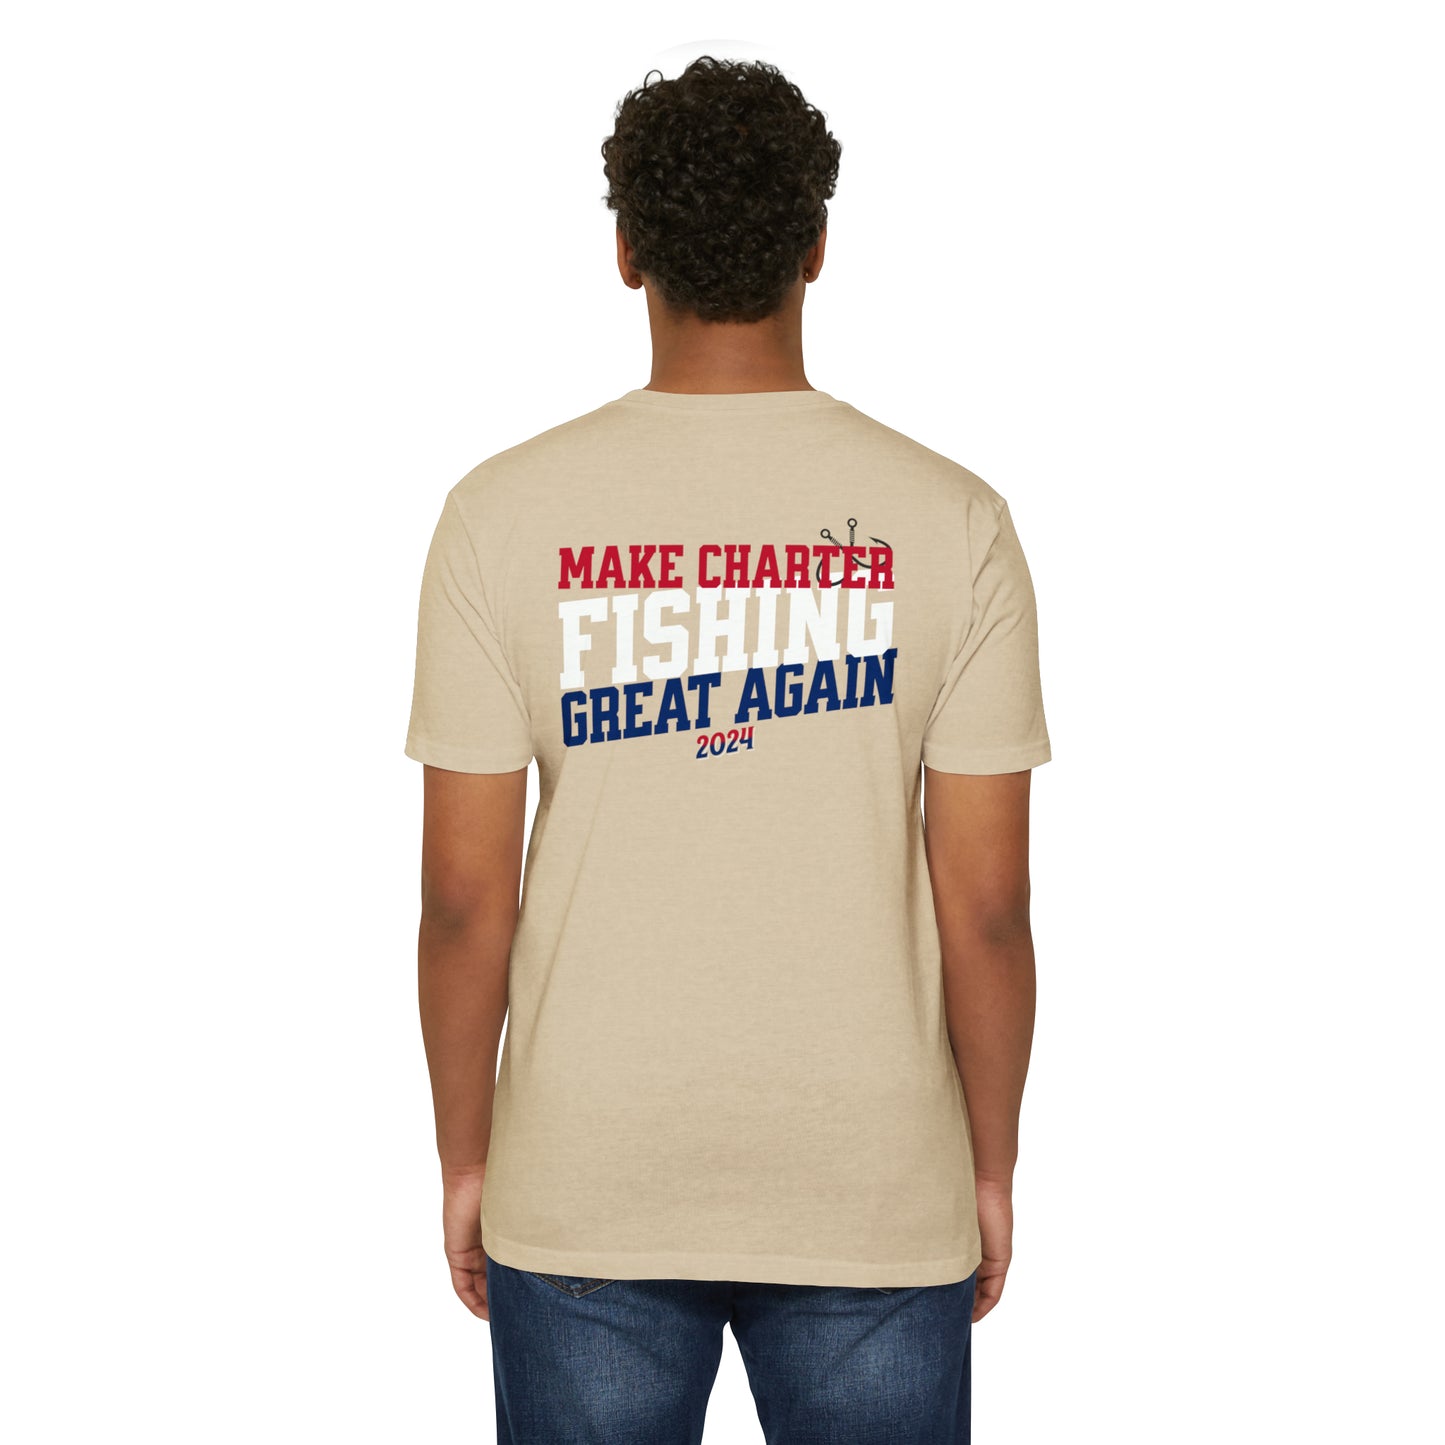 Make Charter Fishing Great Again-T-Shirt